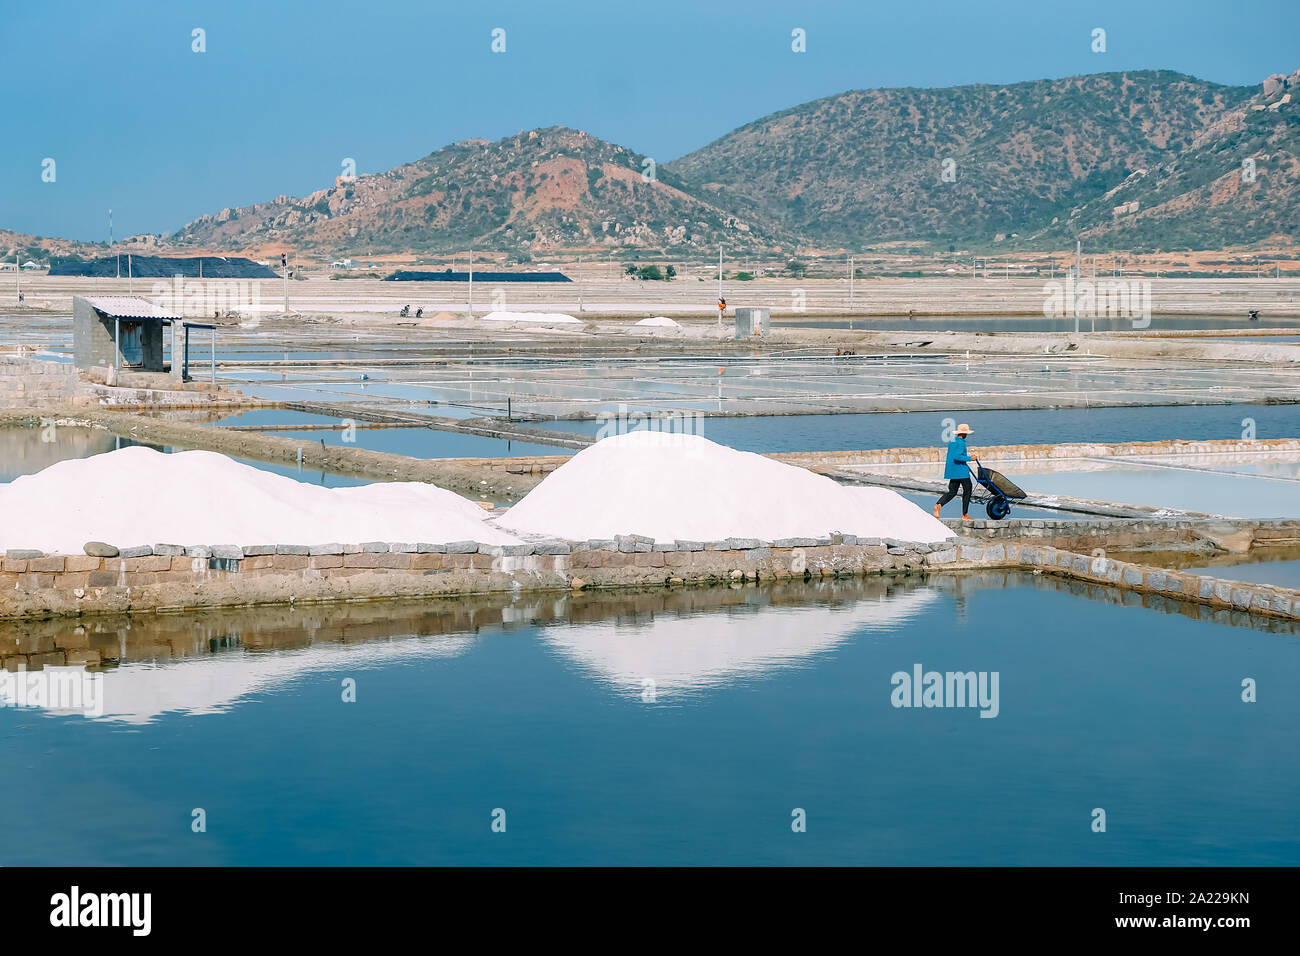 Rassemblement des travailleurs provenant de la récolte de sel de mer Sel de mer à Ninh Thuan, Vietnam. Les agriculteurs récoltent le sel. Image libre de stock de haute qualité de paysage. Banque D'Images